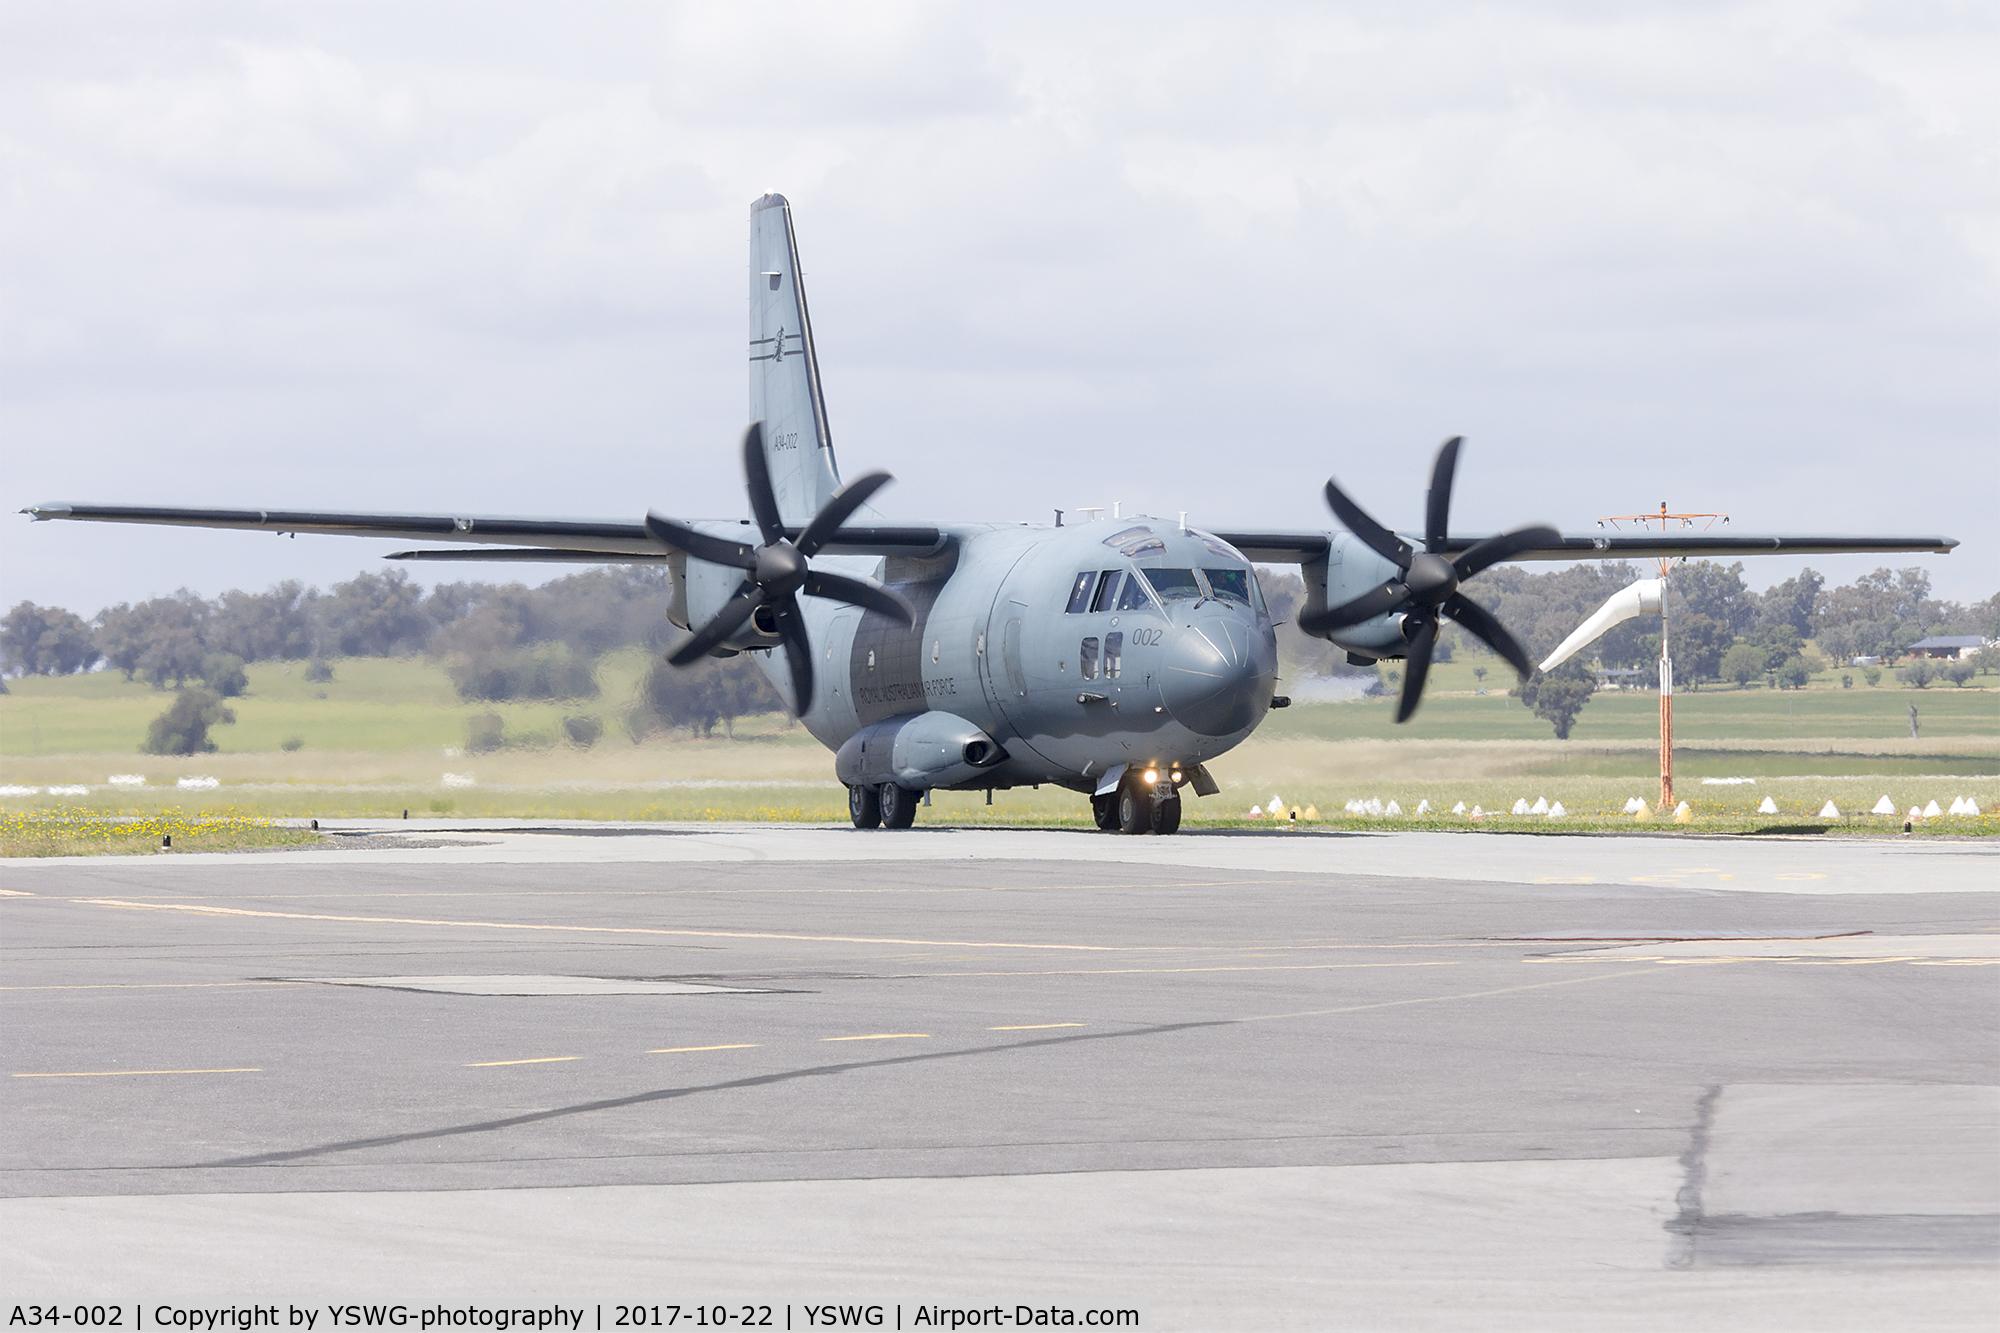 A34-002, 2014 Alenia C-27J Spartan C/N 4181/AUS02, Royal Australian Air Force (A34-002) Alenia C-27J Spartan taxiing at Wagga Wagga Airport